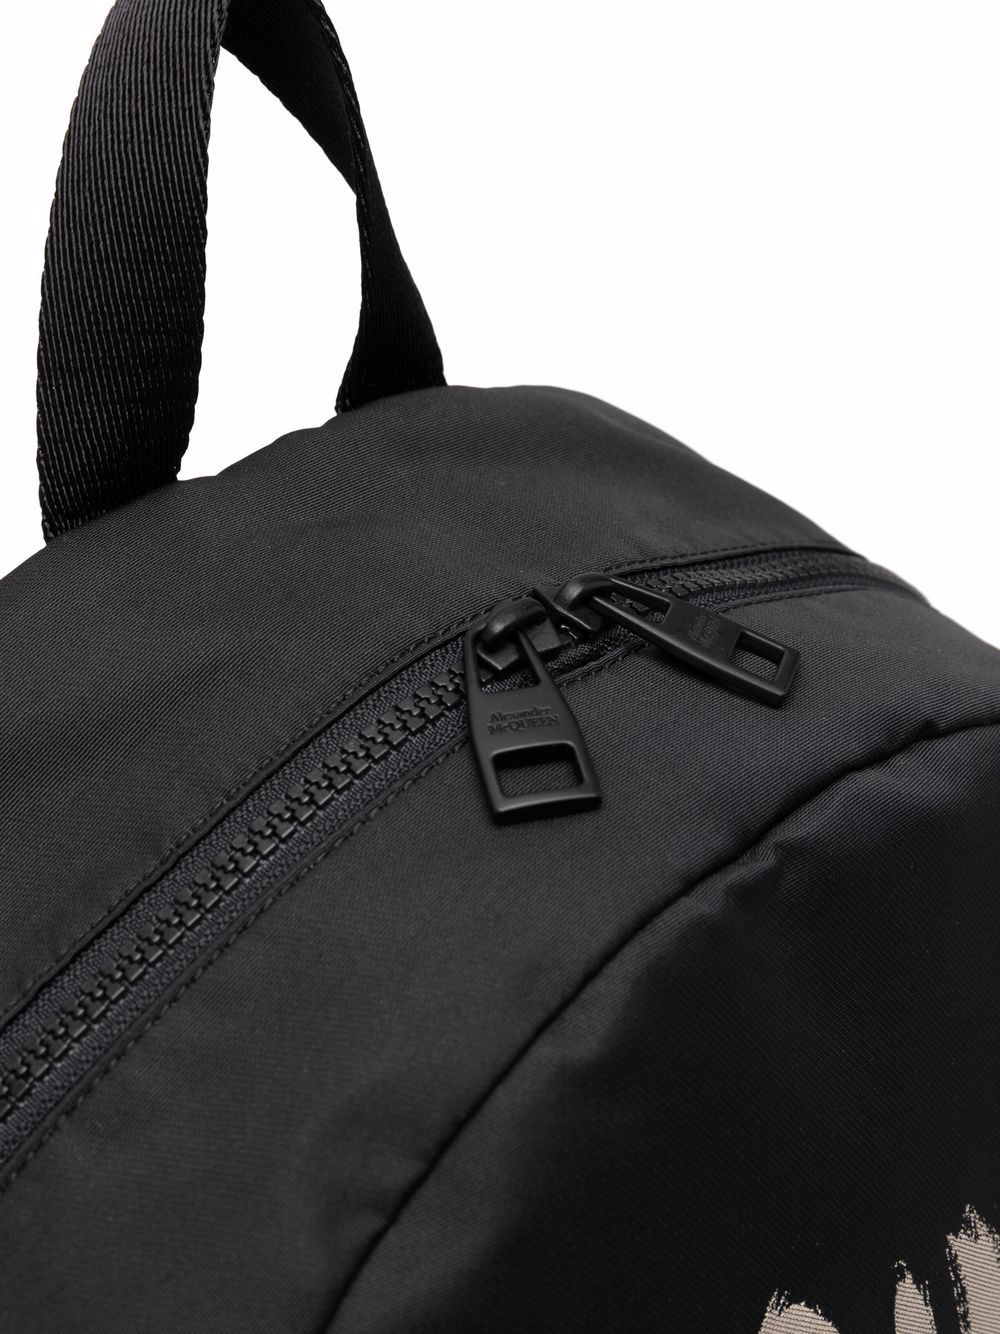 'Graffiti Metropolitan' backpack